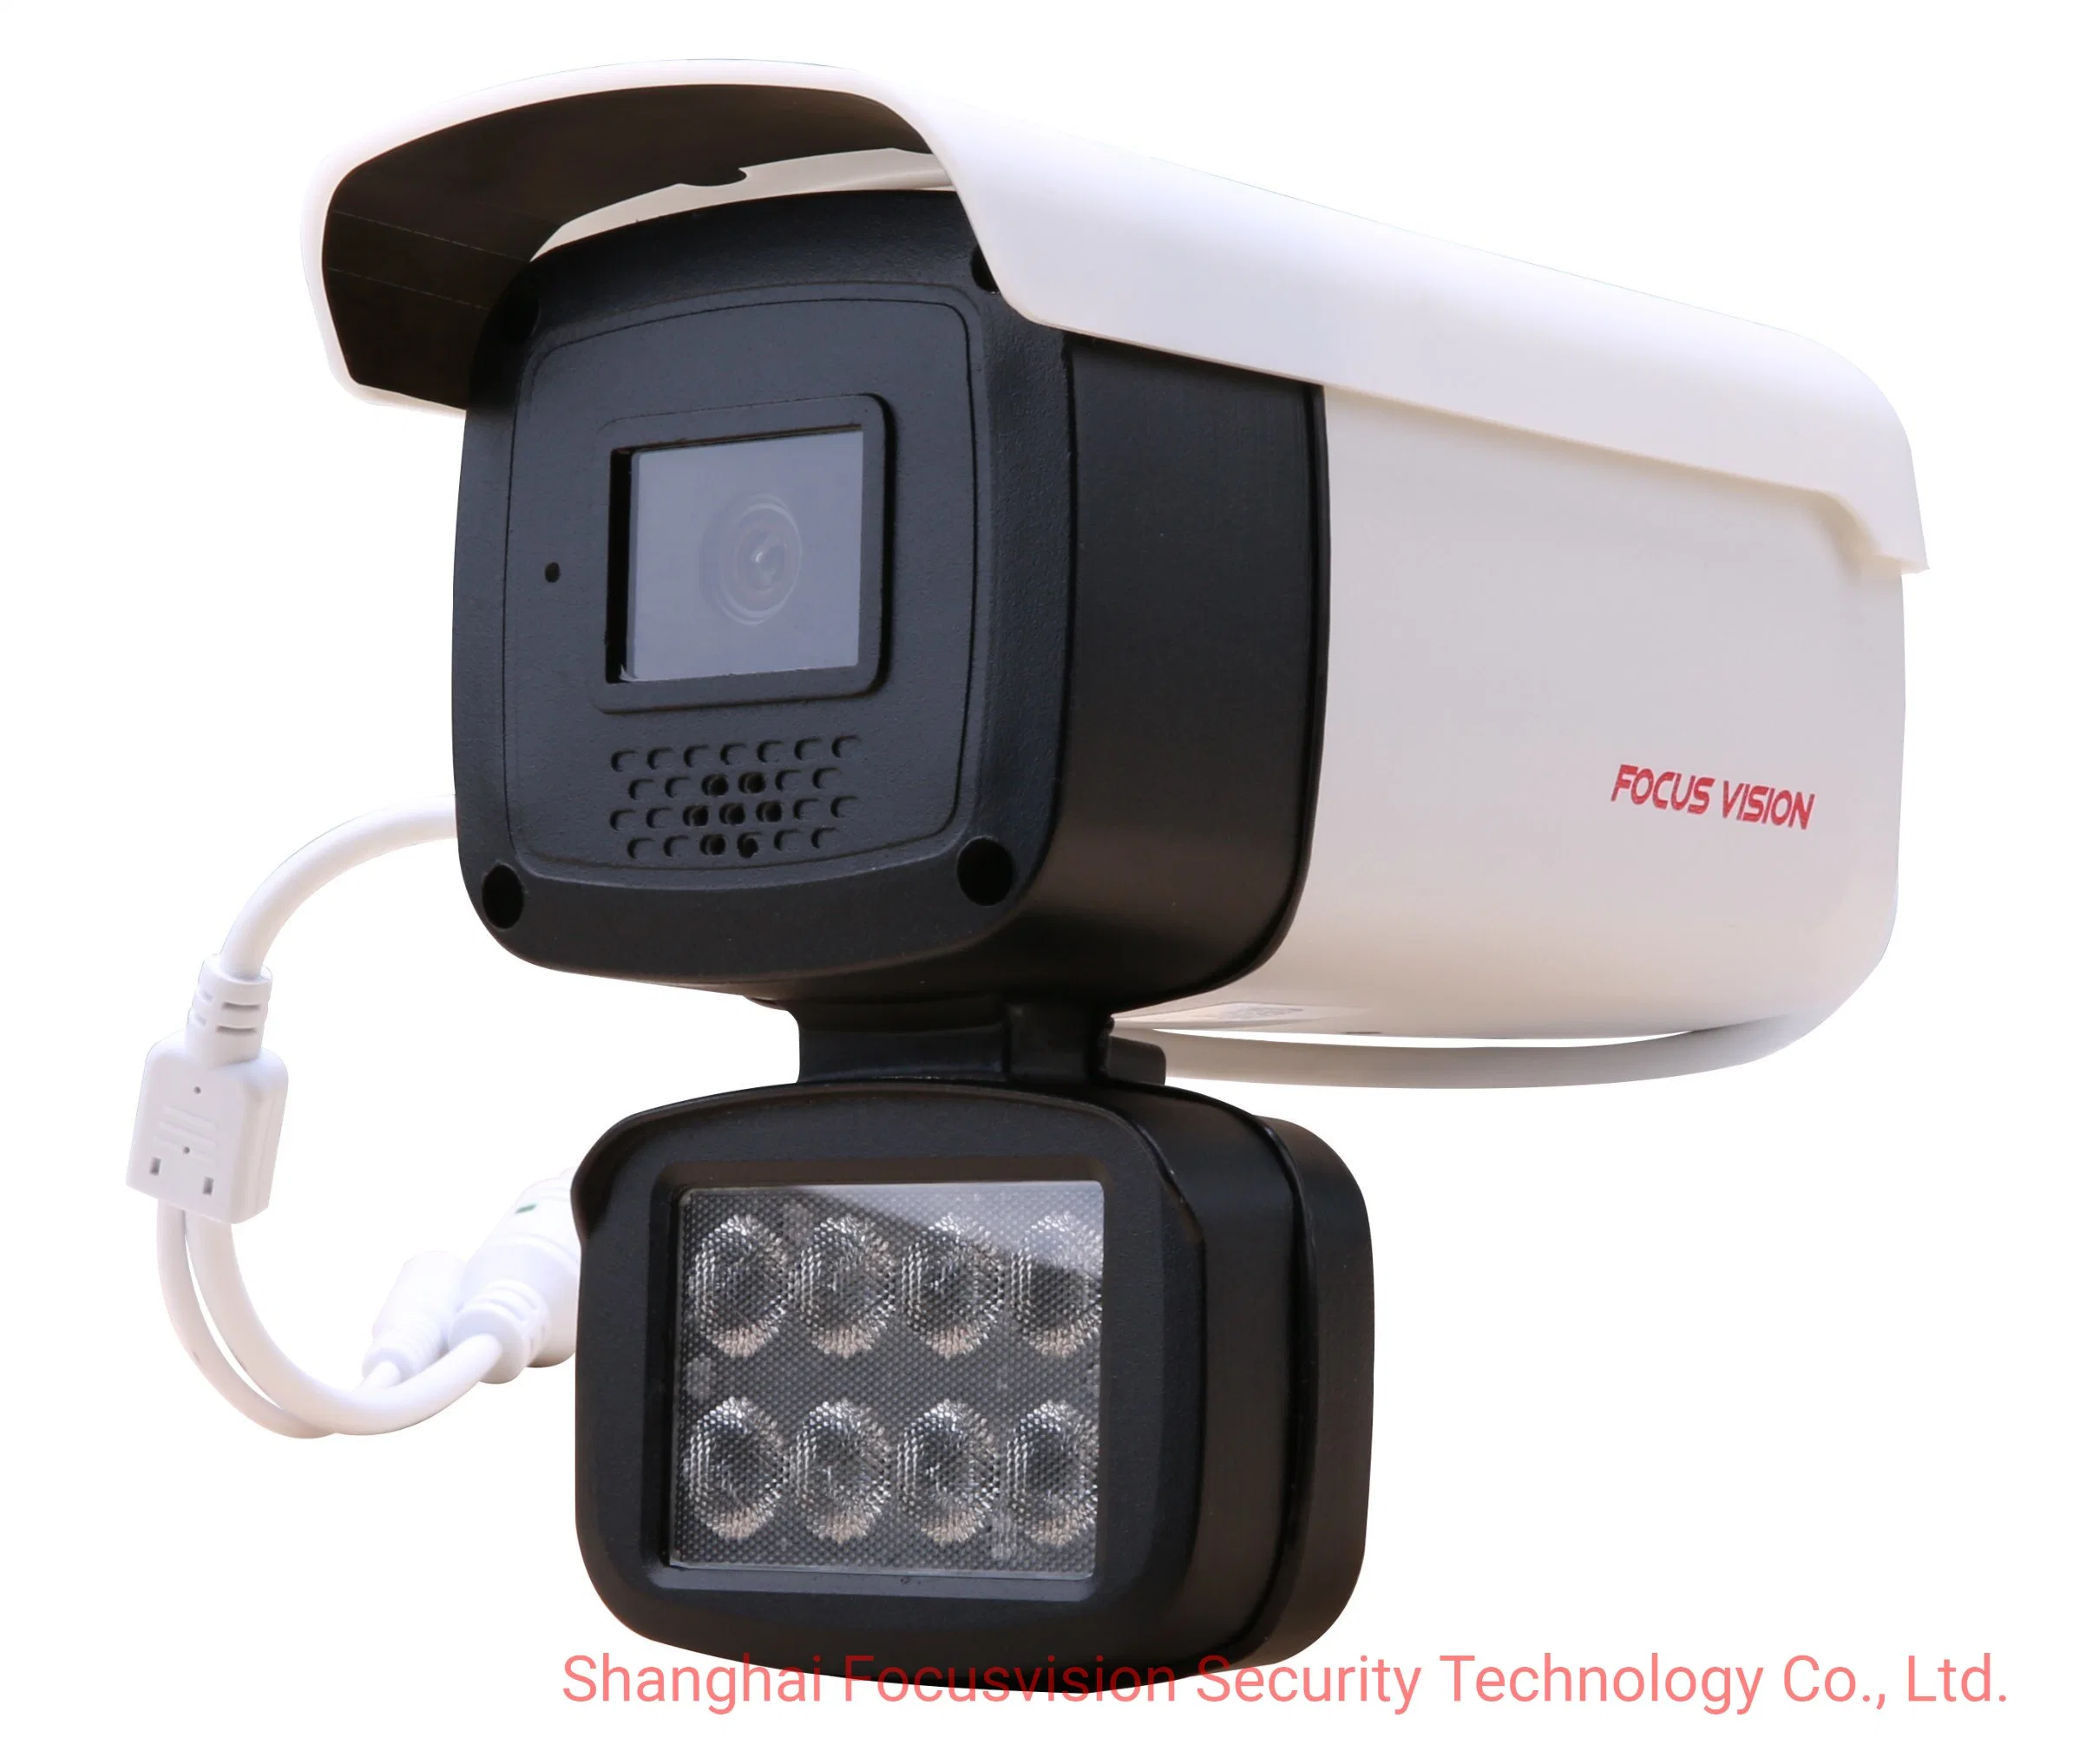 مراقبة نقطية بواسطة تقنية AIP لاكتشاف الإنسان في الأماكن المفتوحة/الداخلية بدقة 4 ميغابكسل ومراقبة ذكية للإنذار الذكي كاميرا فيديو CCTV